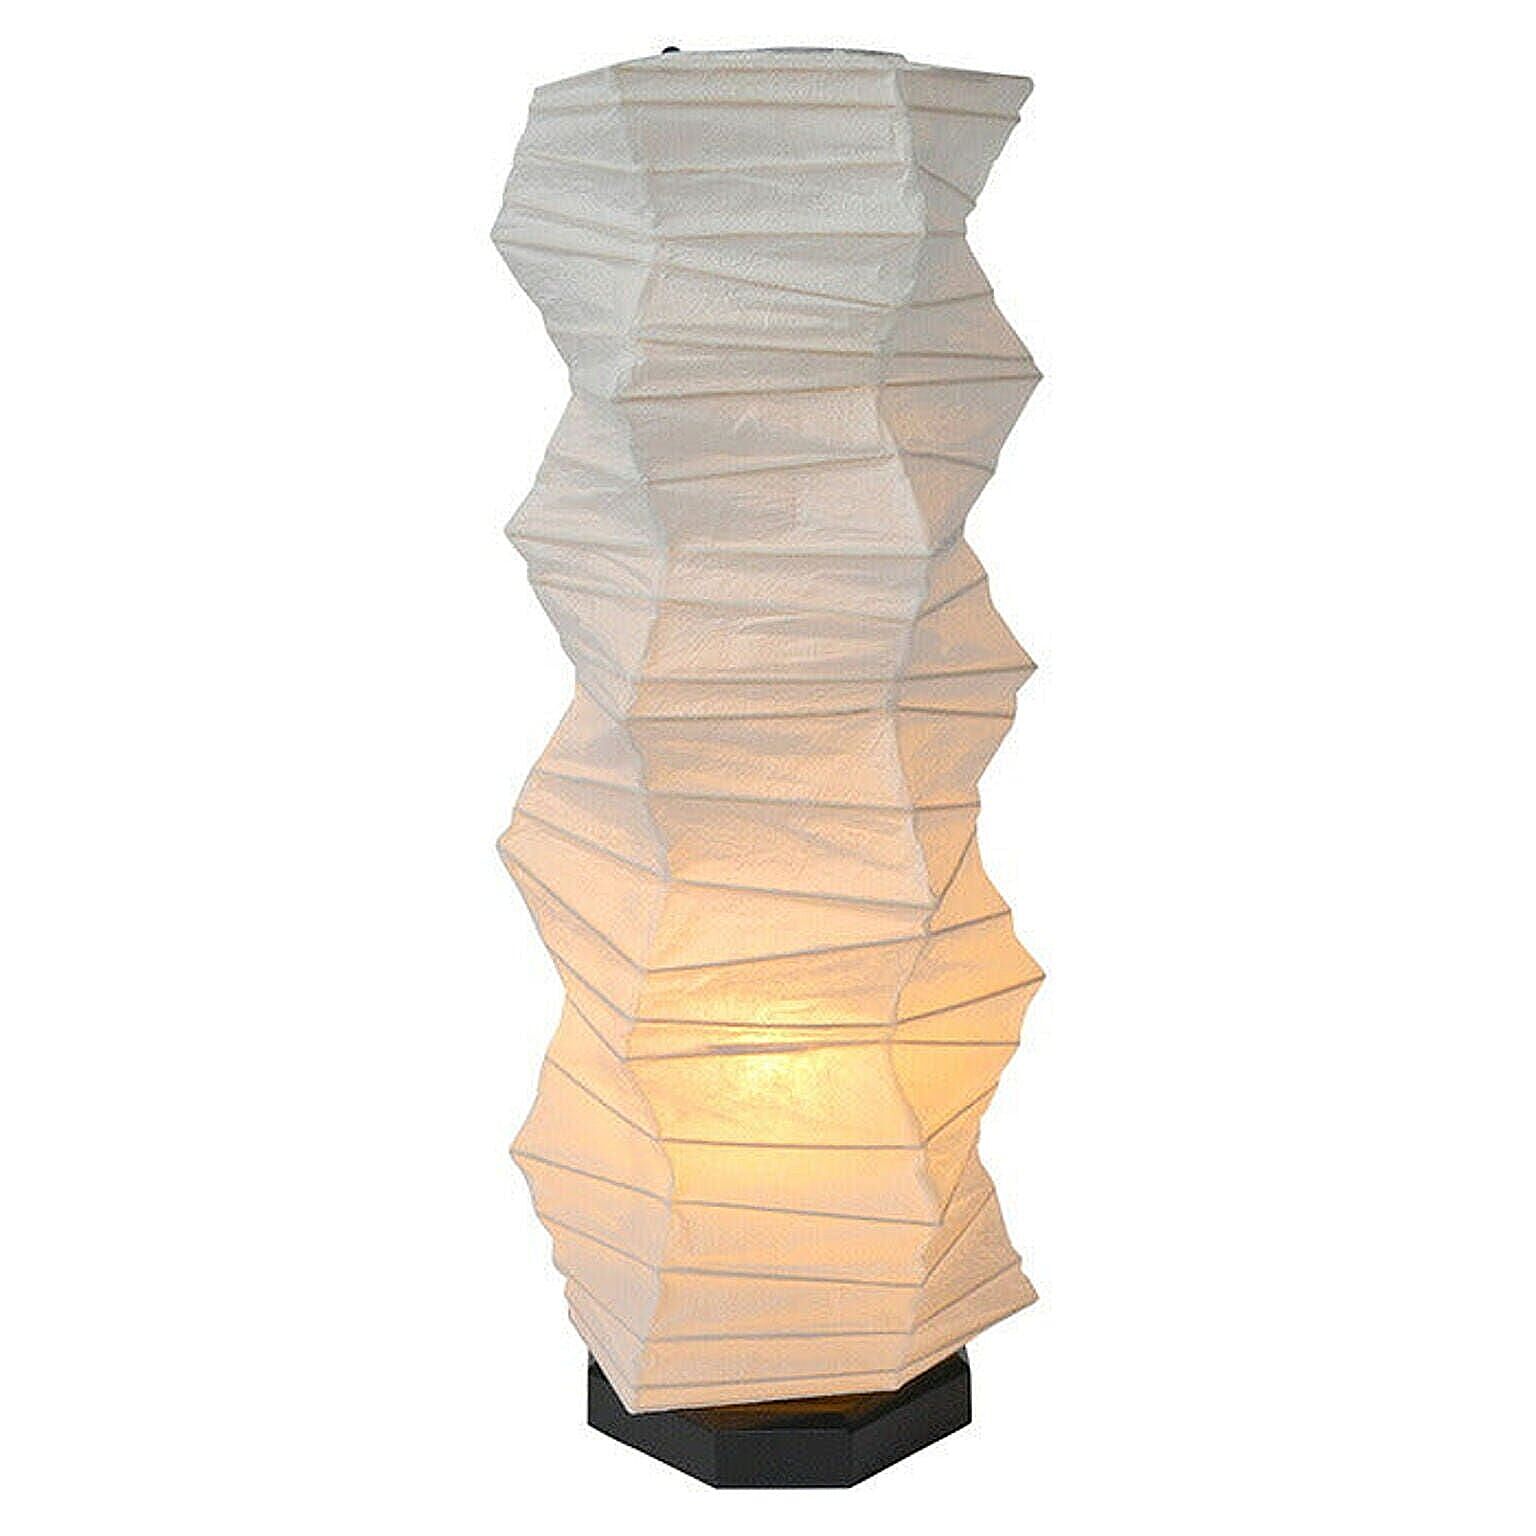 テーブルライト 和紙 boko 揉み紙 電球付属 幅190x奥行190x高さ480mm 彩光デザイン